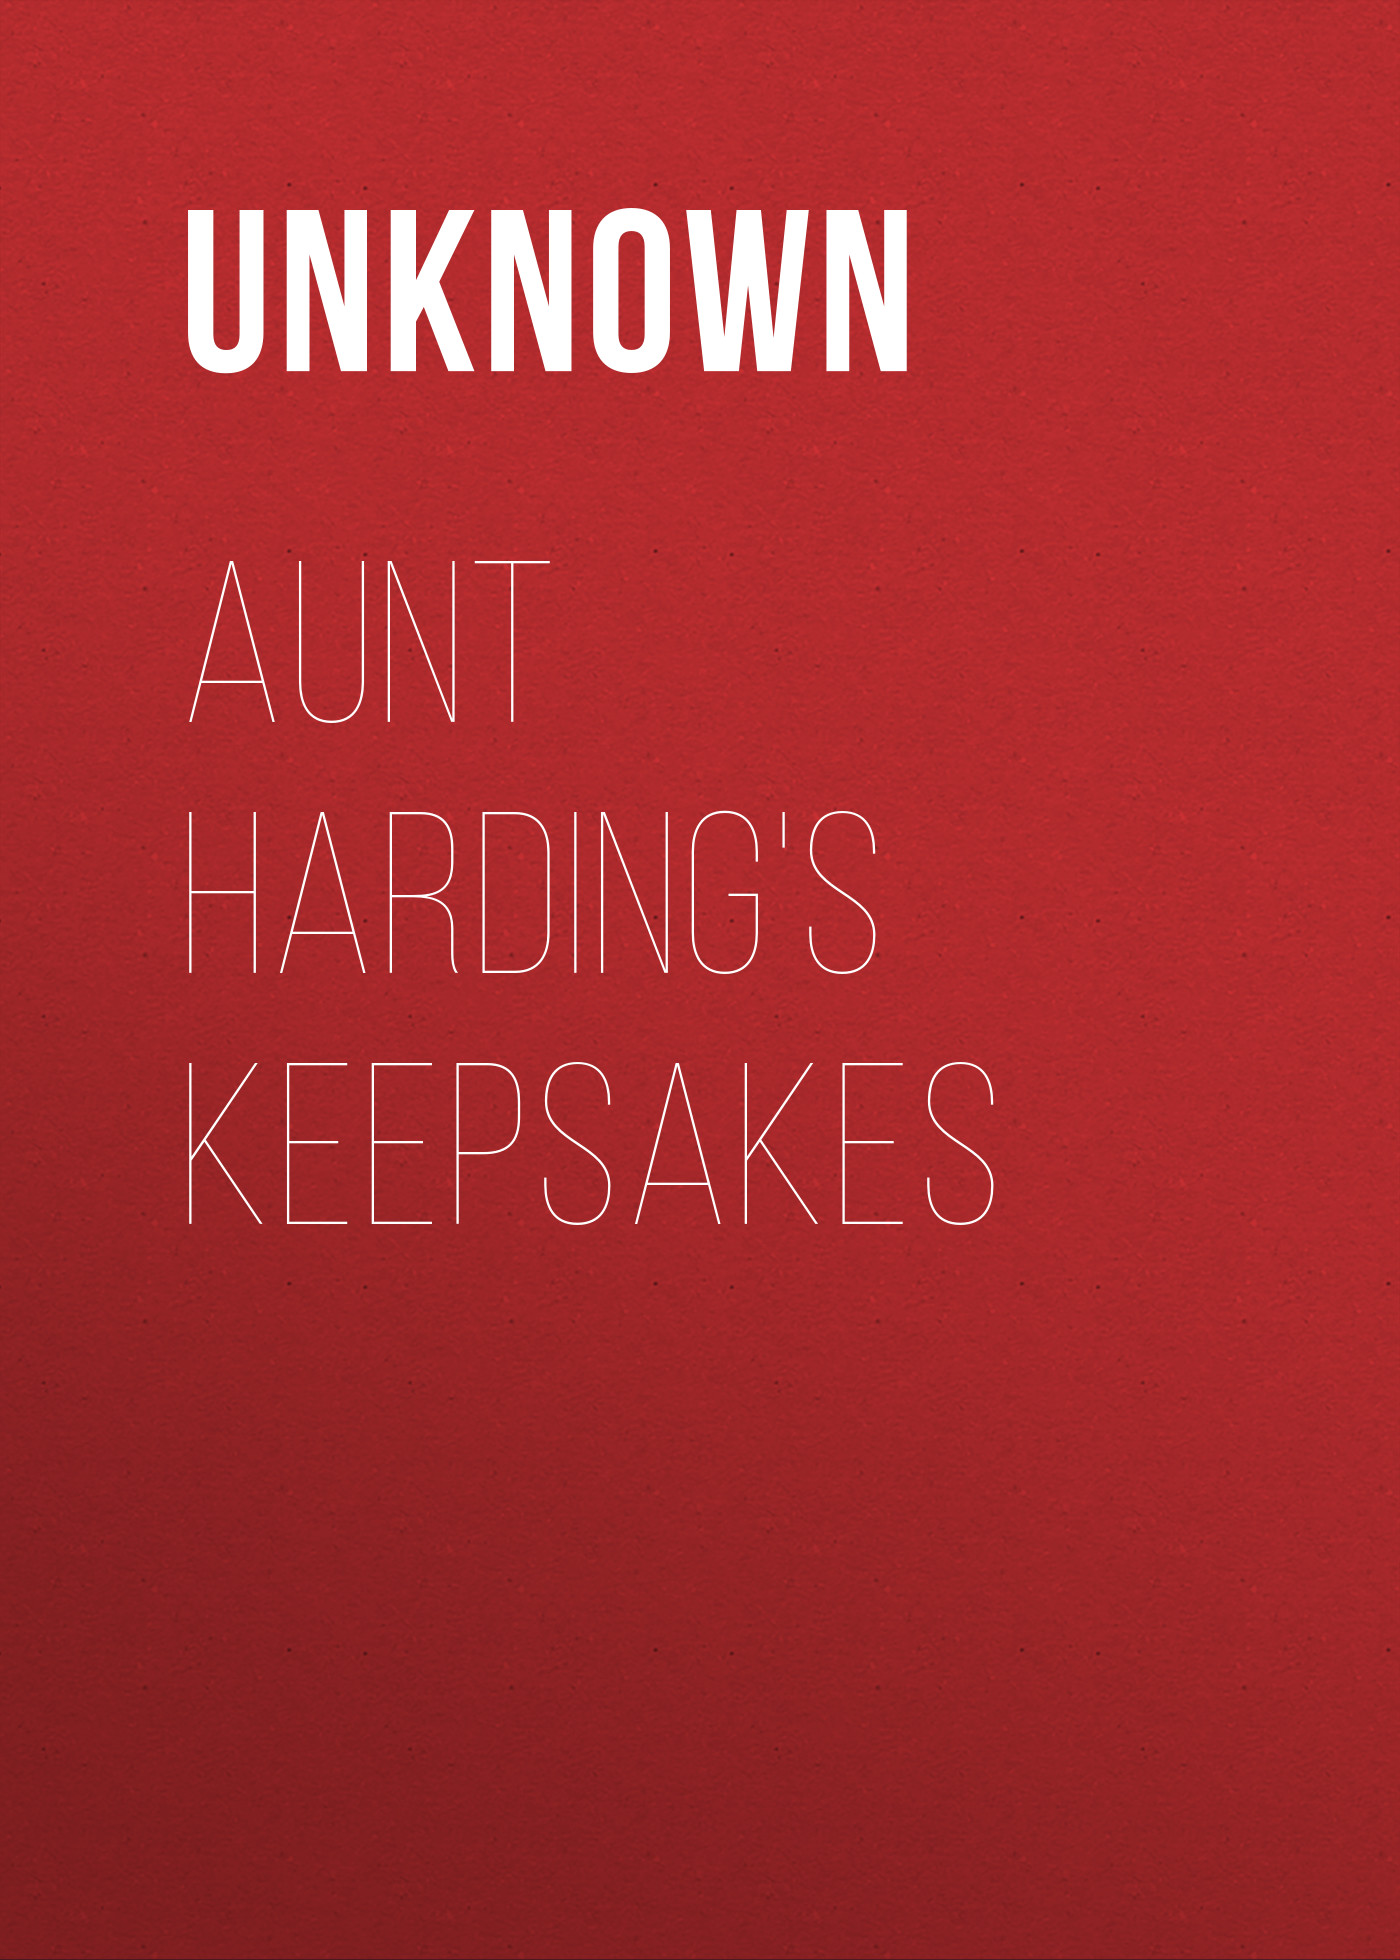 Unknown Aunt Harding's Keepsakes